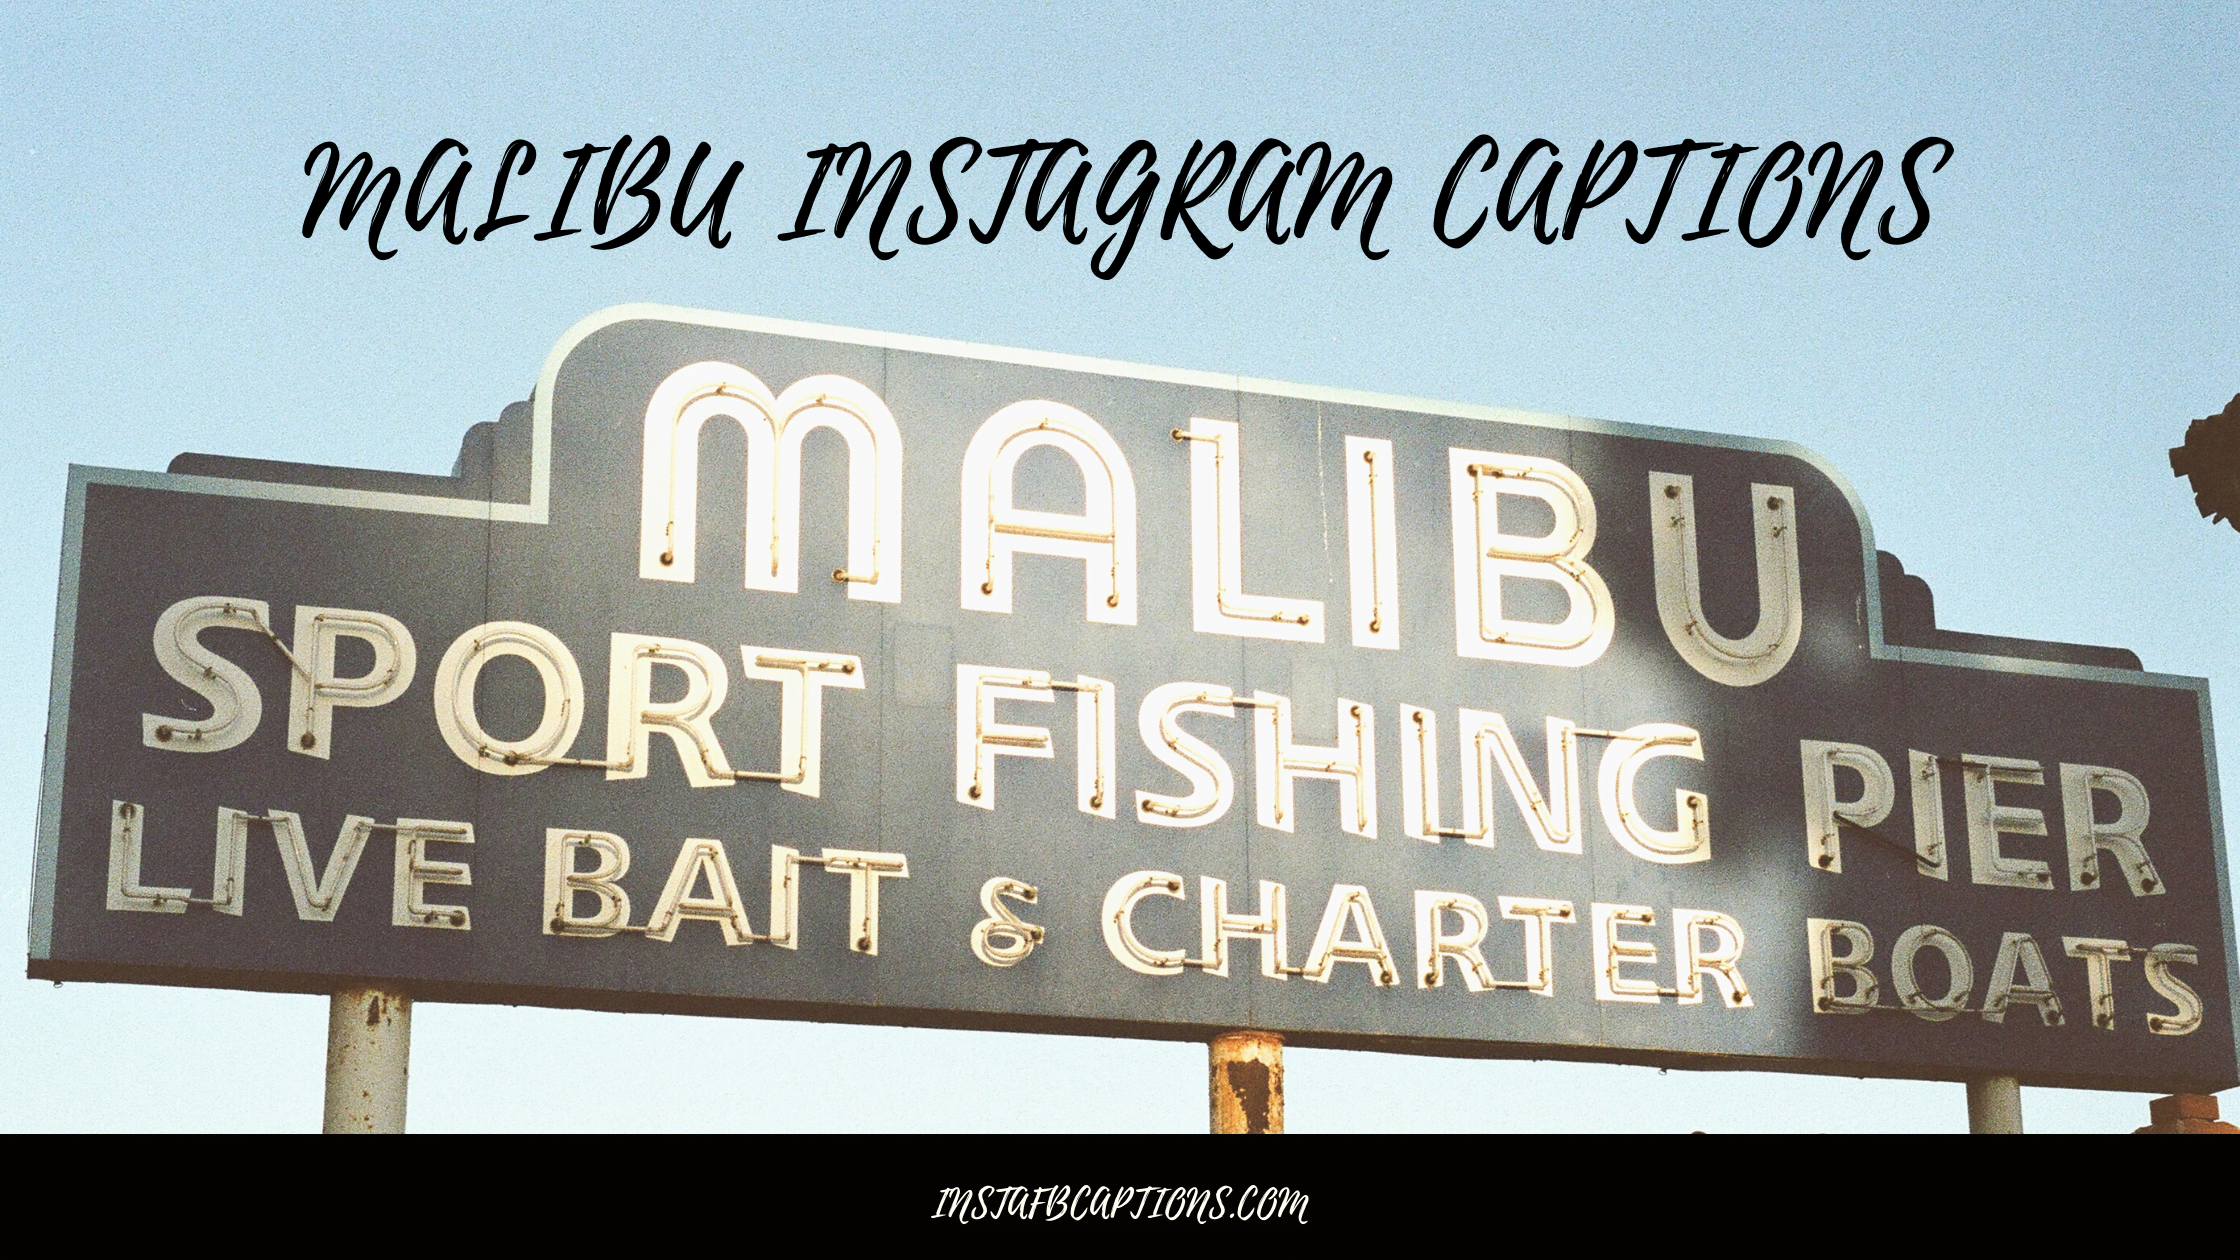 Malibu Instagram Captions  - Malibu Instagram Captions - 82 MALIBU Instagram Captions Quotes Hashtags in 2023